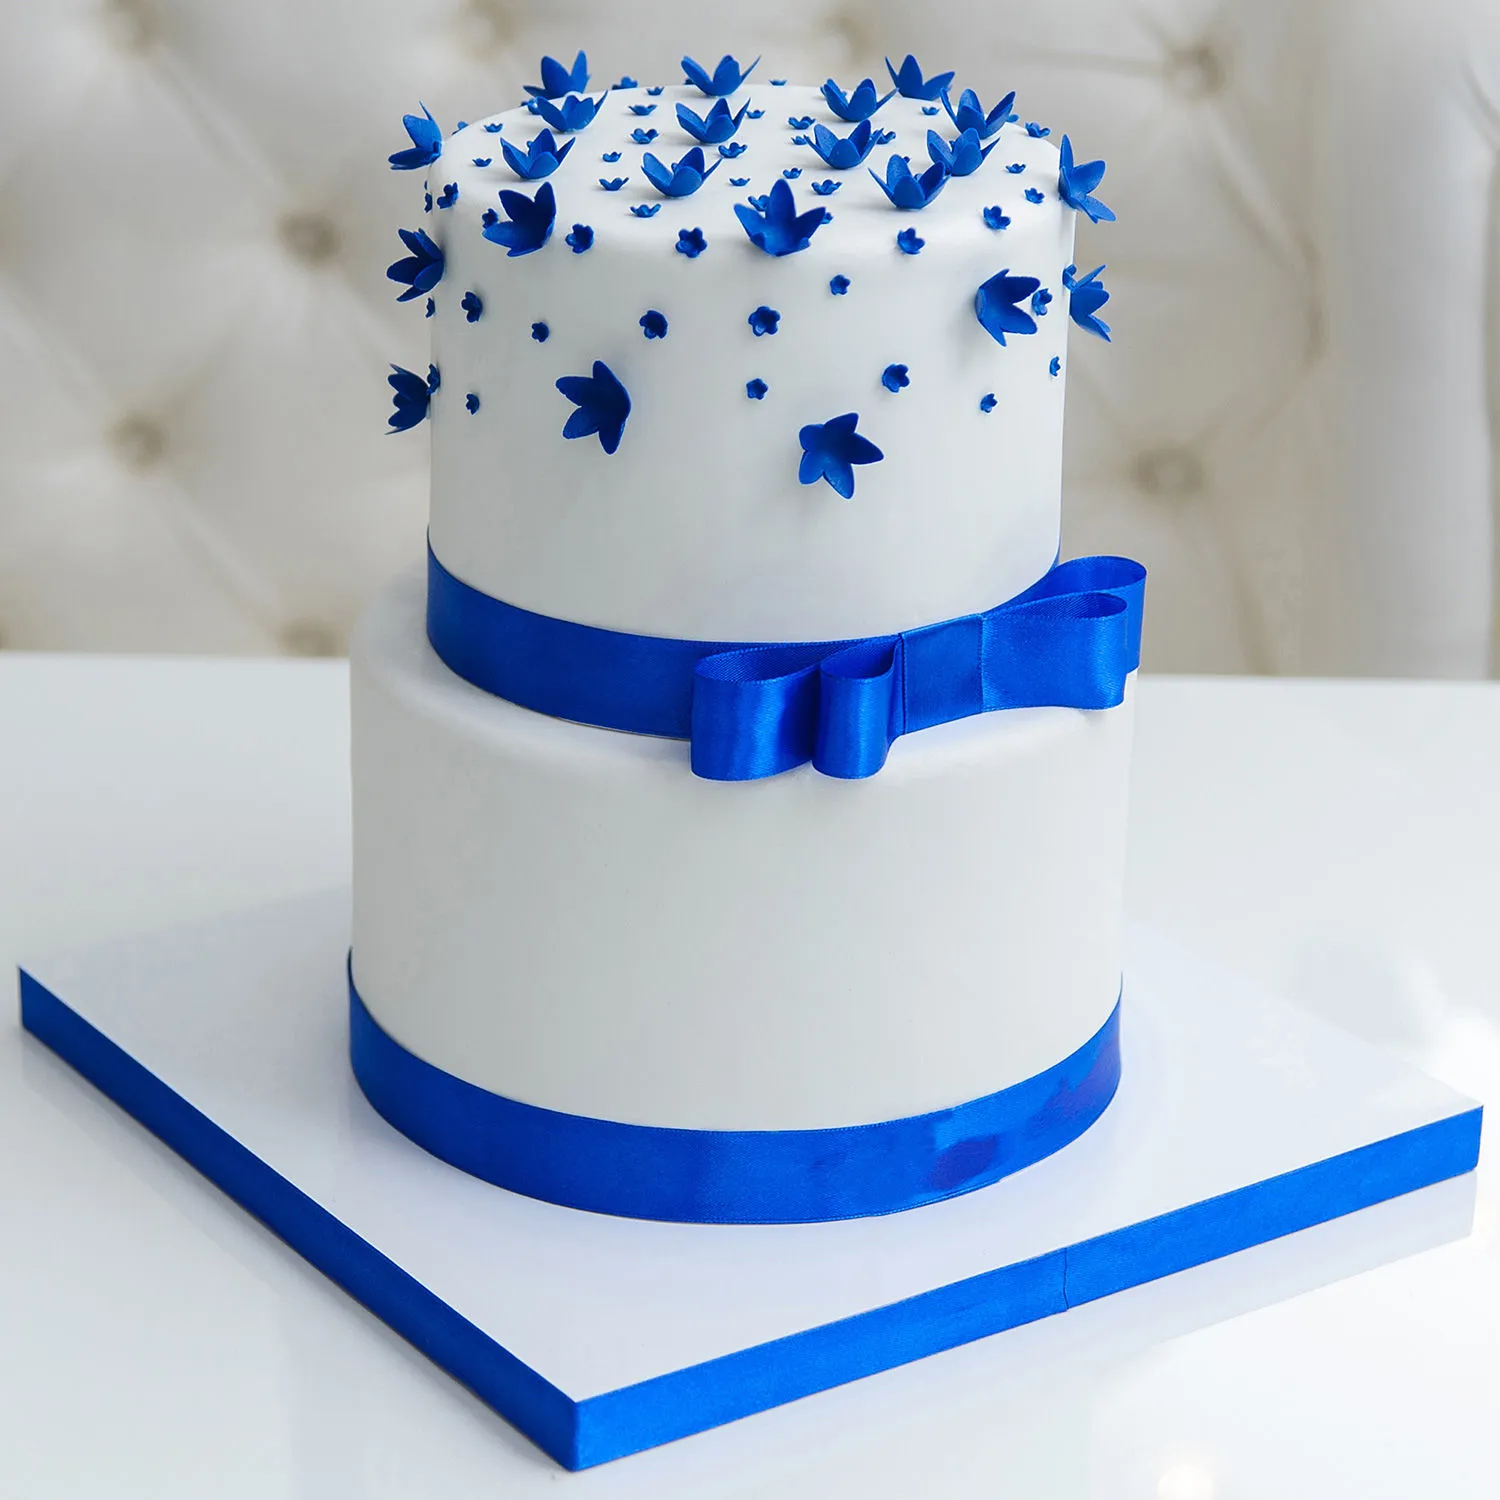 2-Tier Custom Cake – The Cake Shoppe Dream